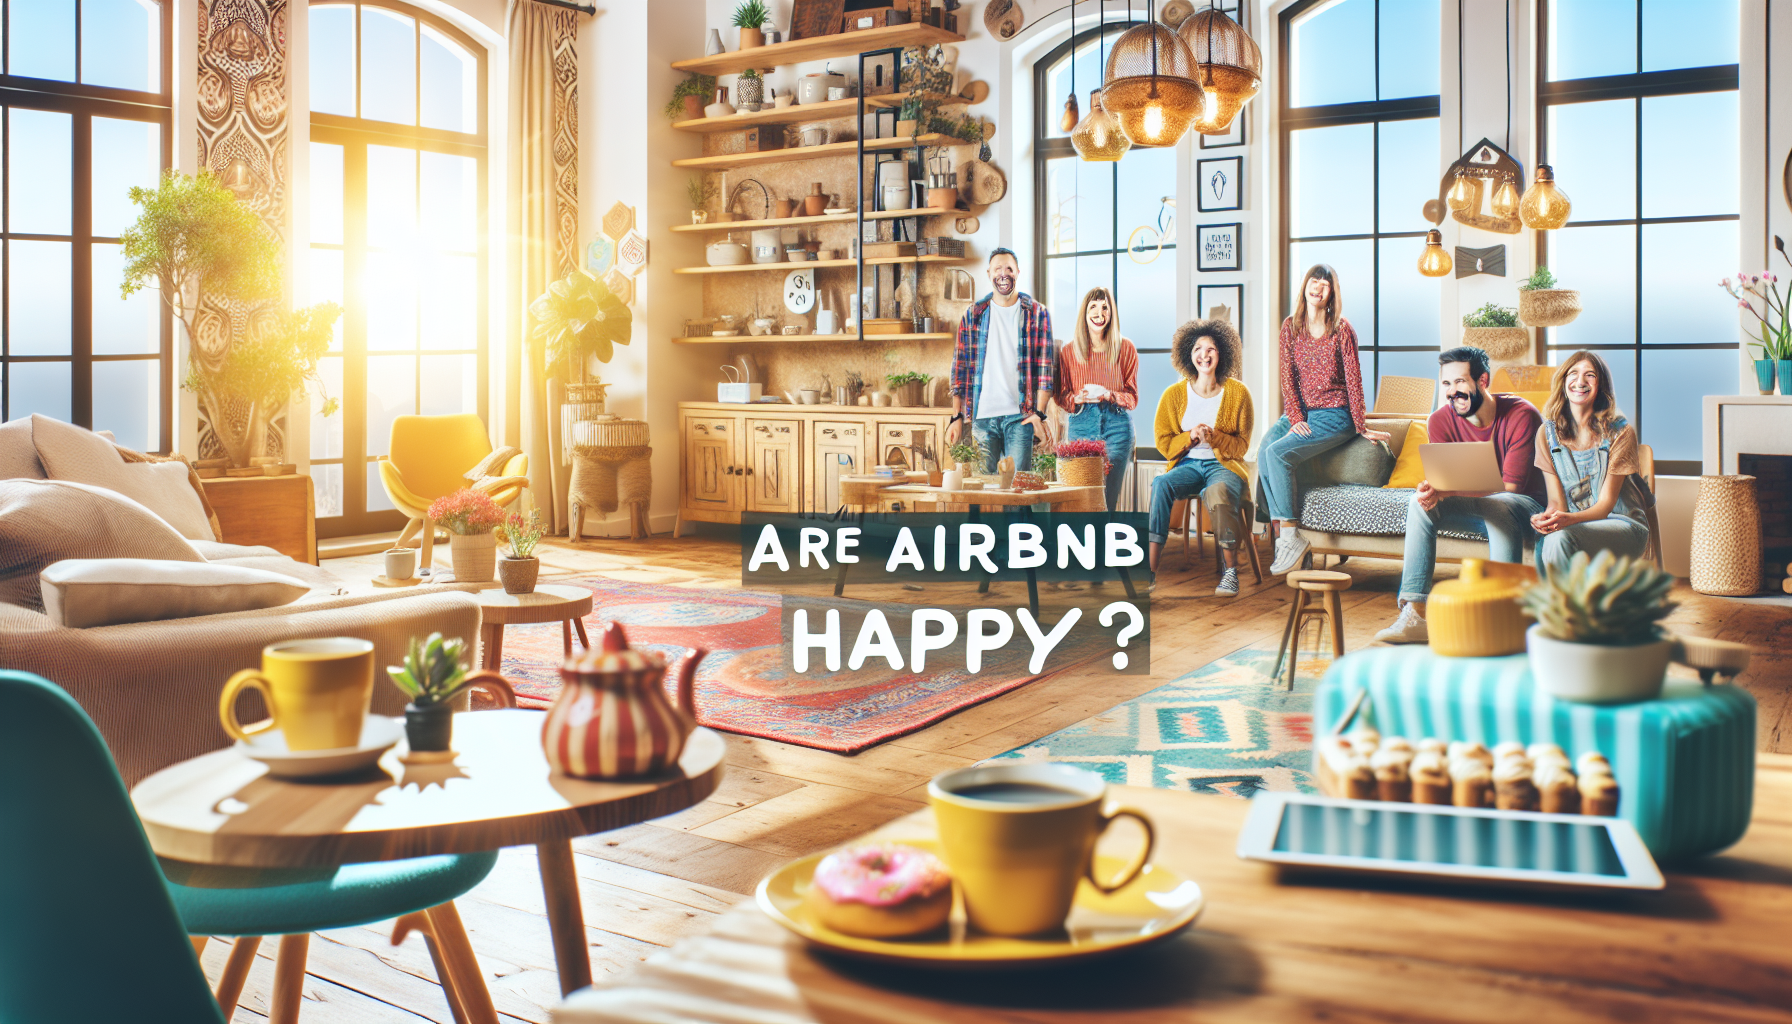 découvrez l'opinion des voyageurs sur leur expérience avec airbnb et comment ils apprécient les services offerts par la plateforme de location.